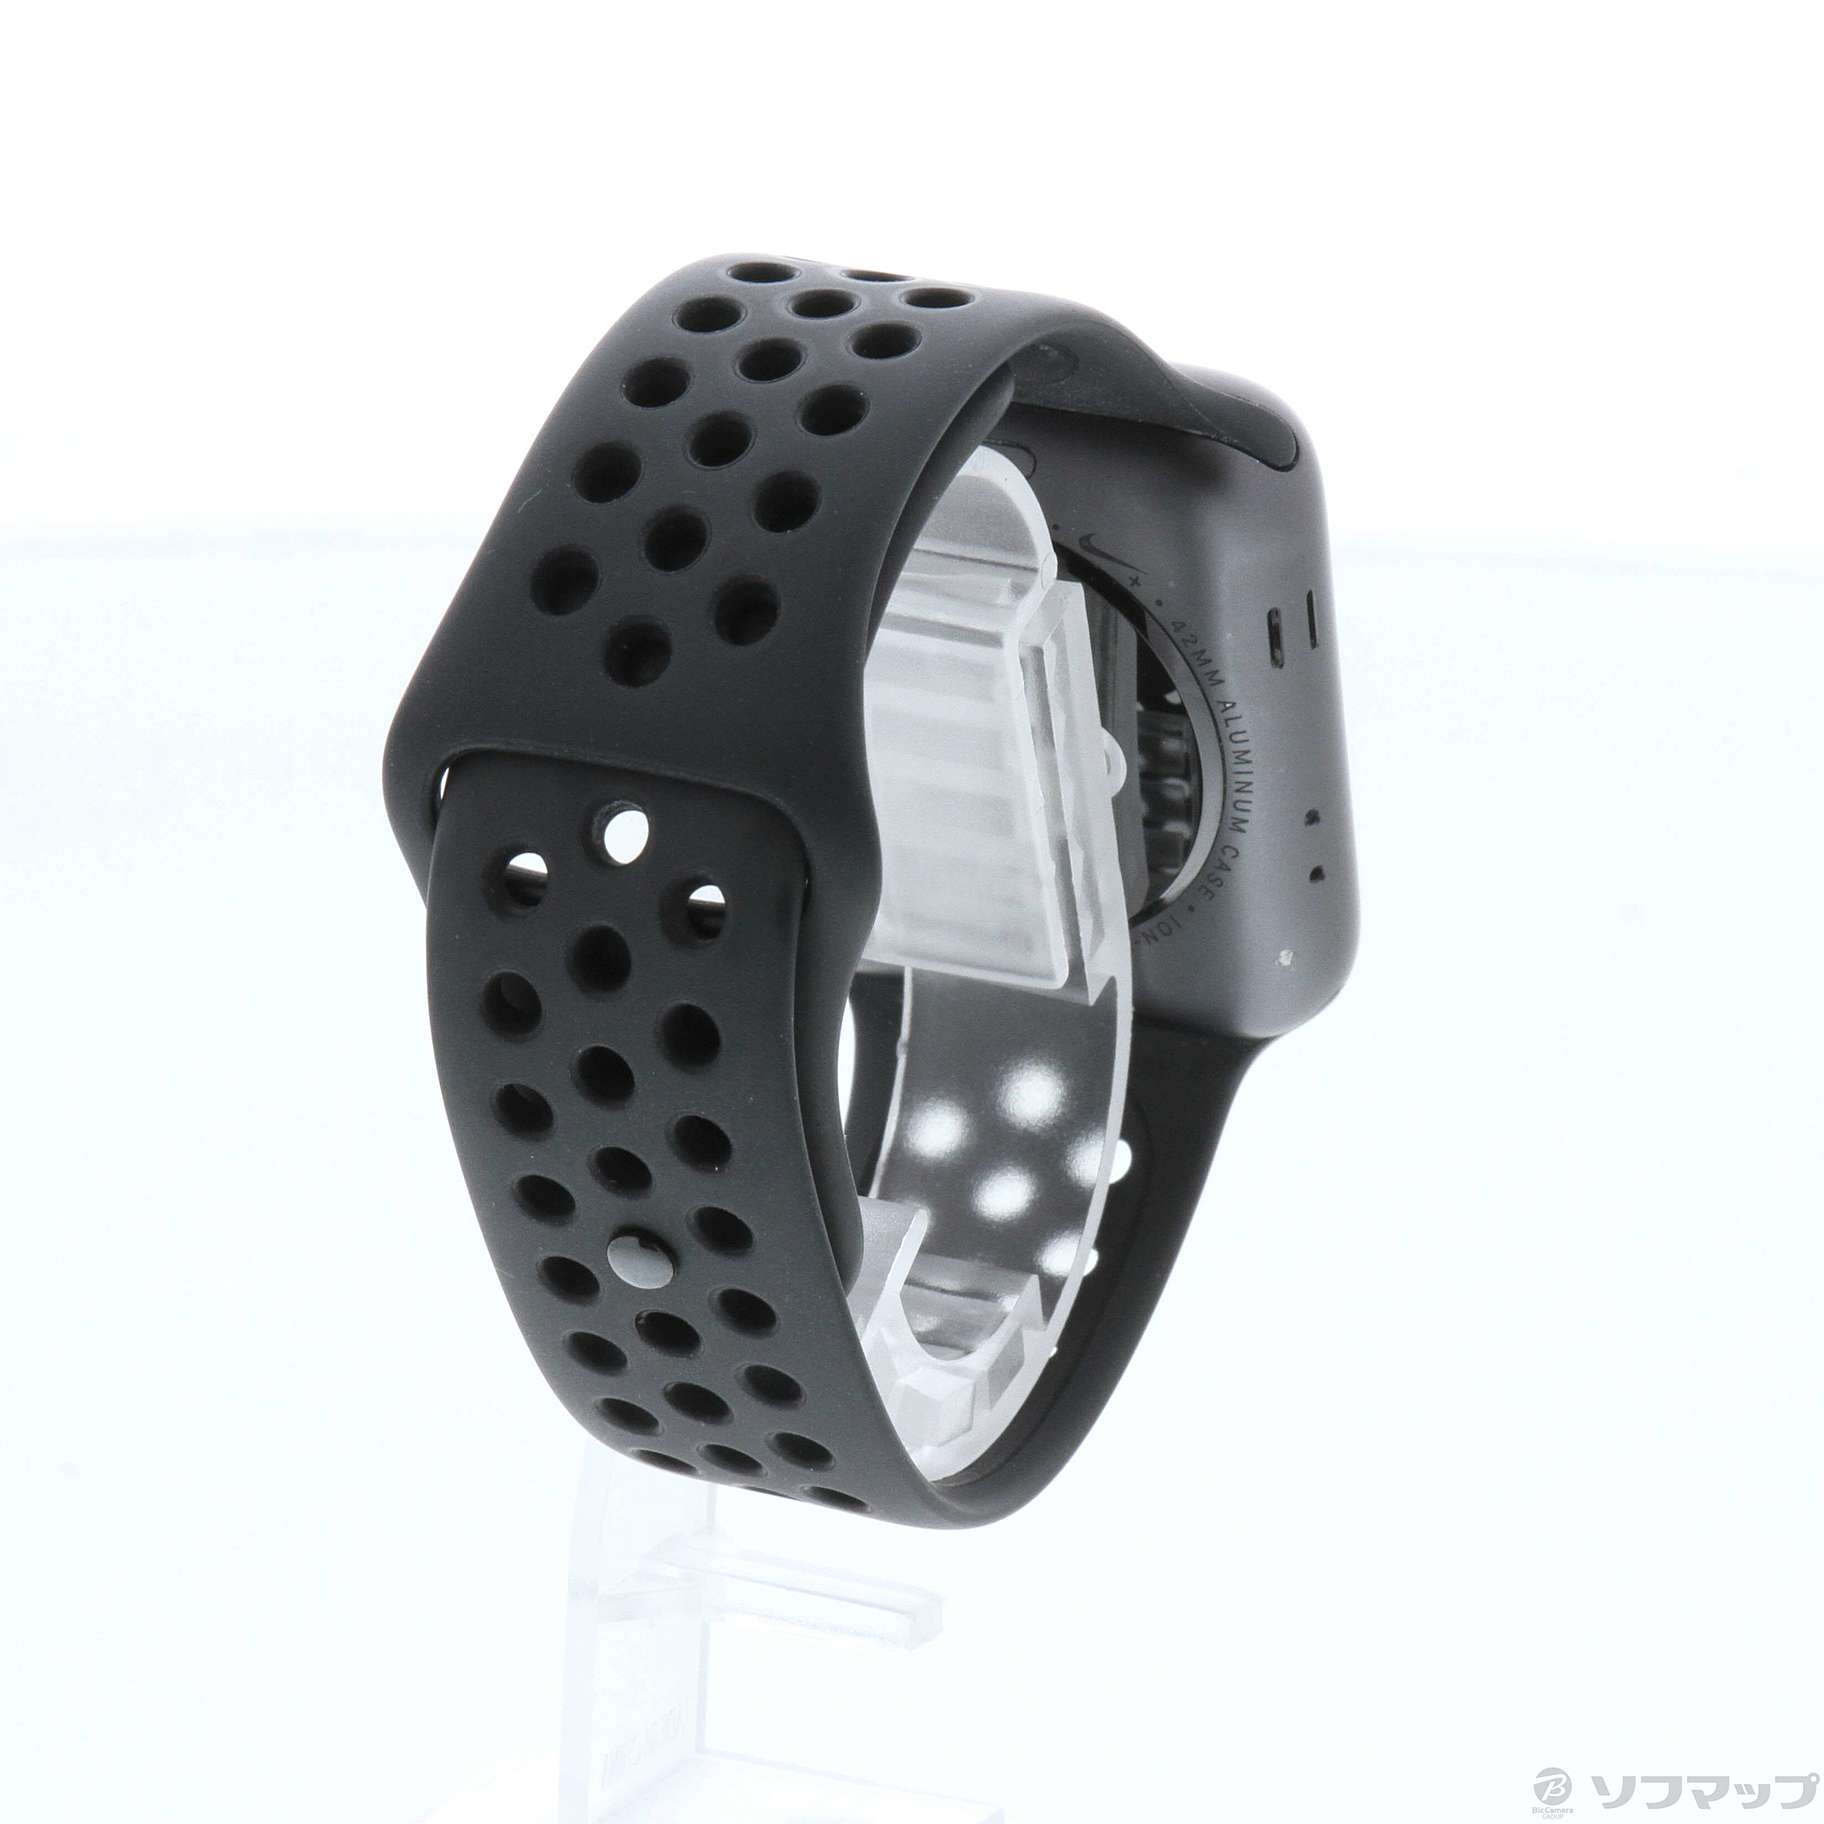 中古】Apple Watch Series 2 Nike+ 42mm スペースグレイアルミニウム 